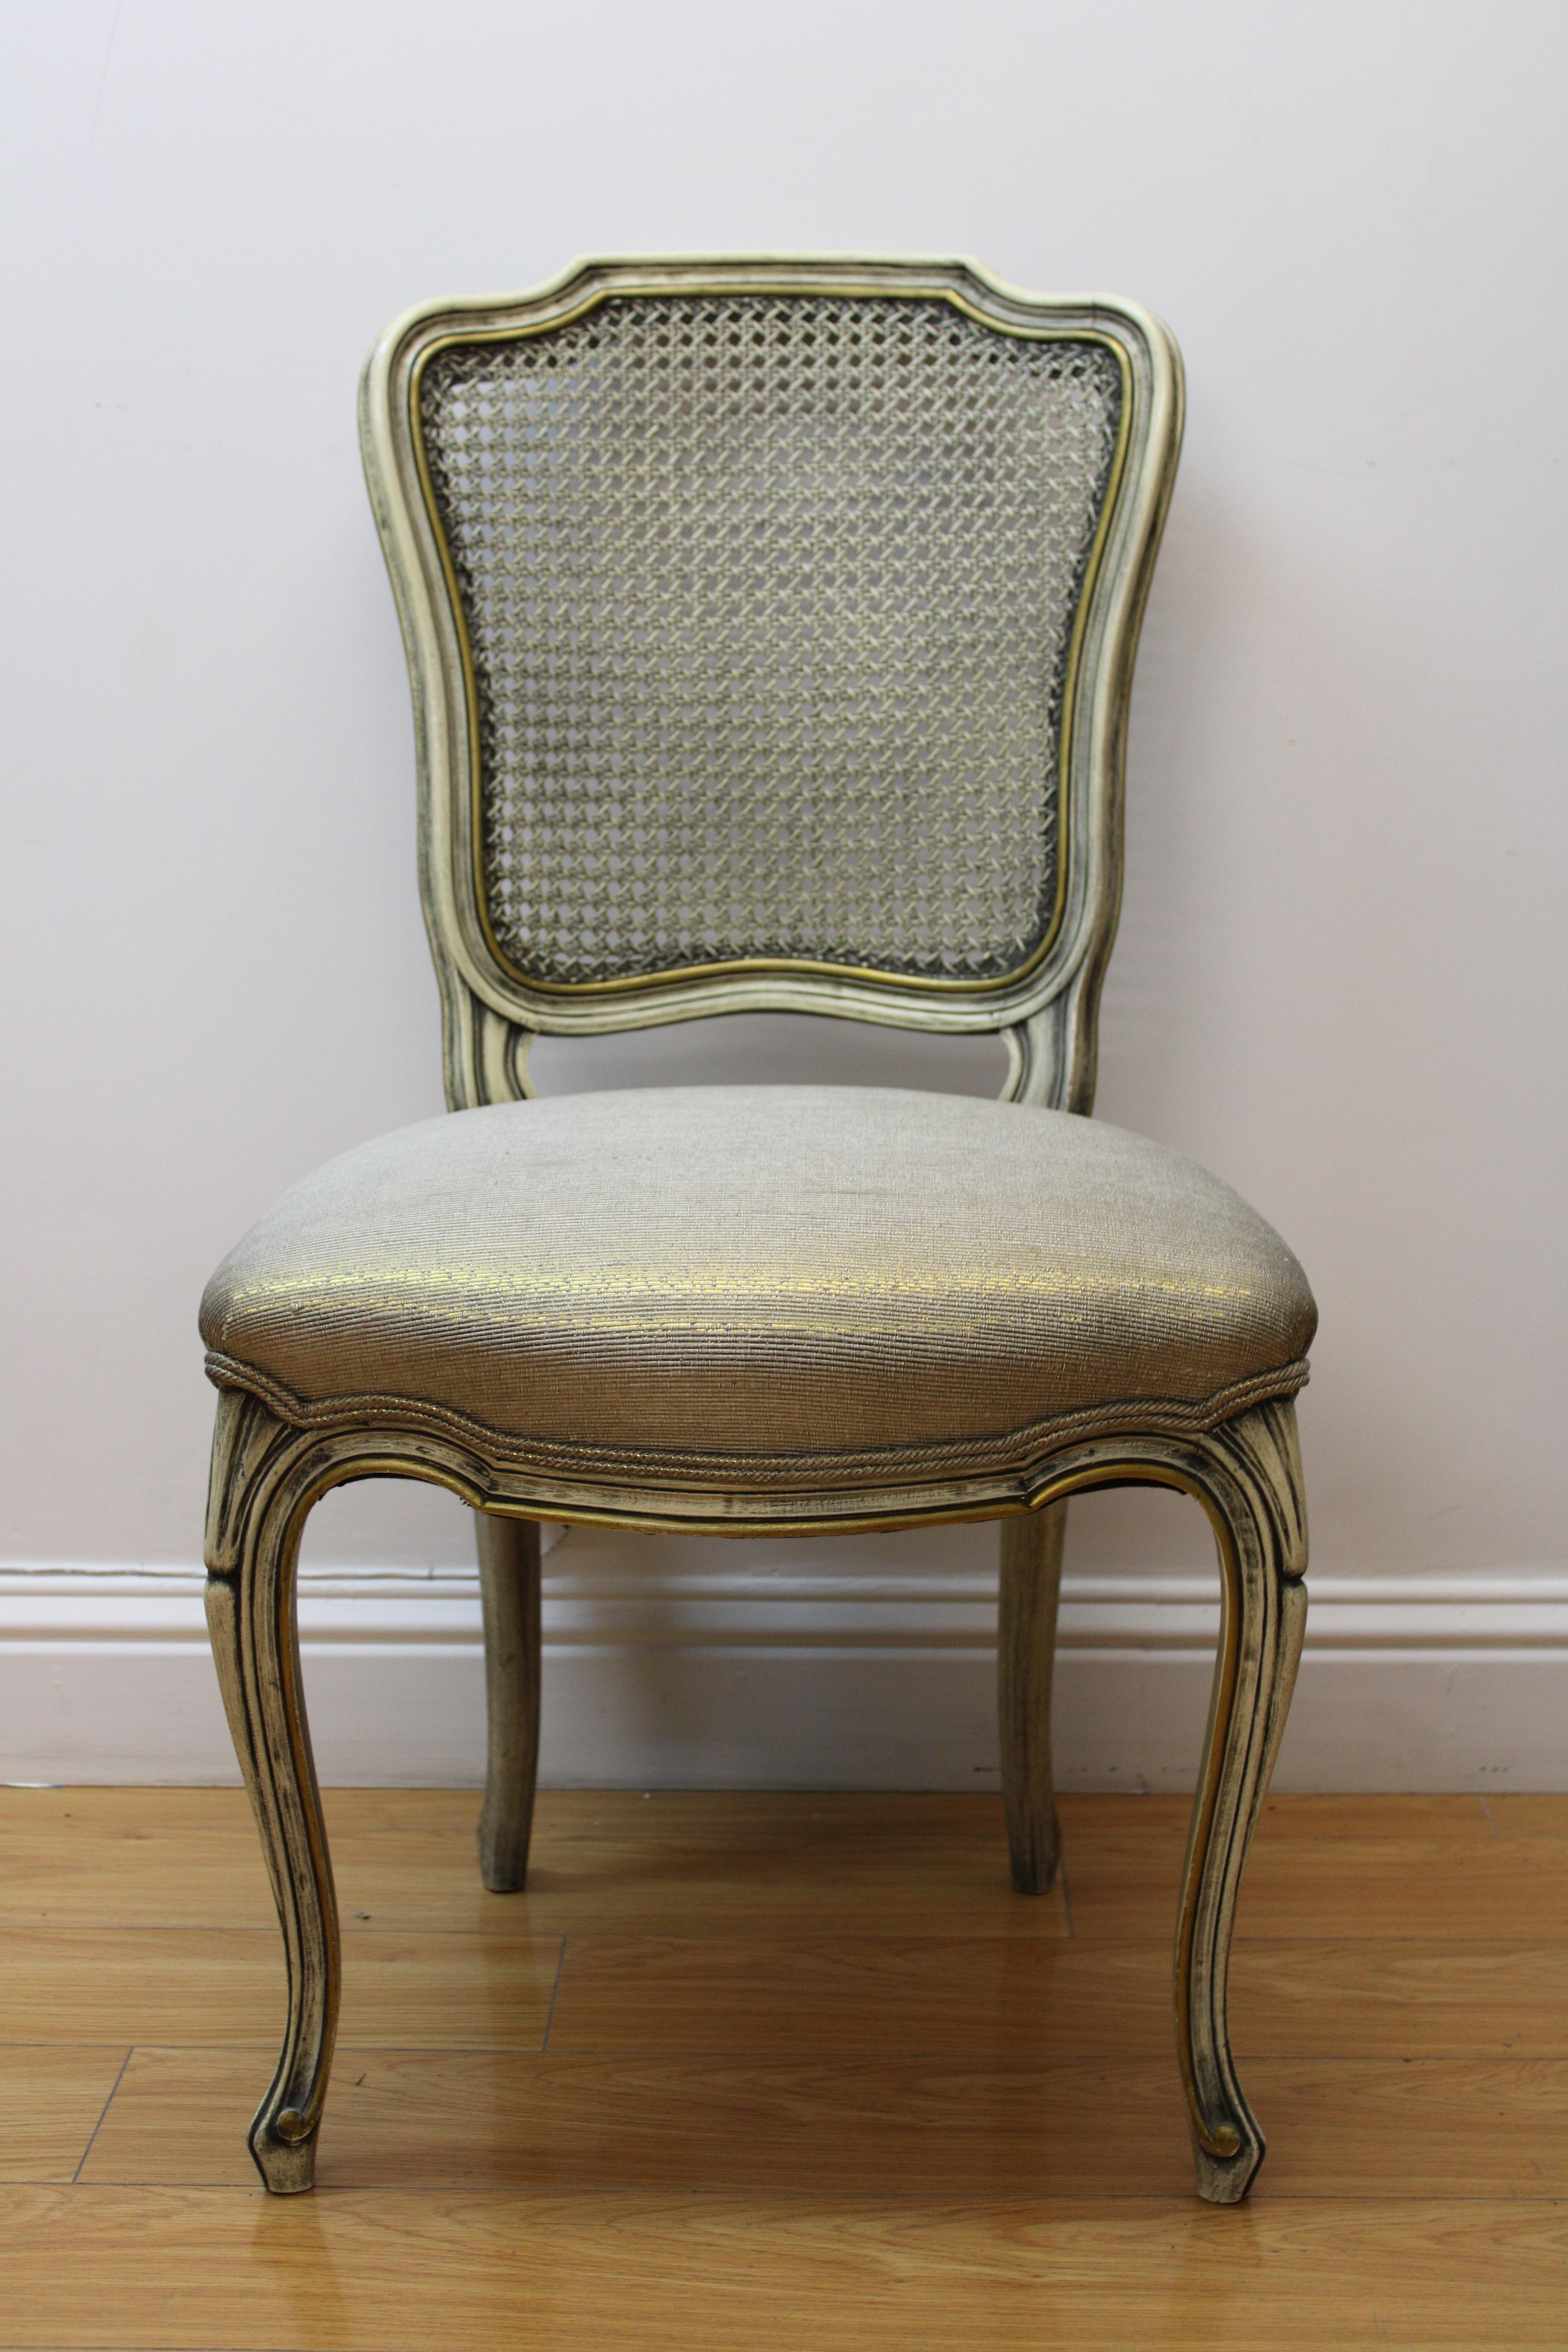 C. 20e siècle

Chaises d'appoint françaises sculptées avec dossiers cannelés et sièges rembourrés. Peint à la main en crème et or.